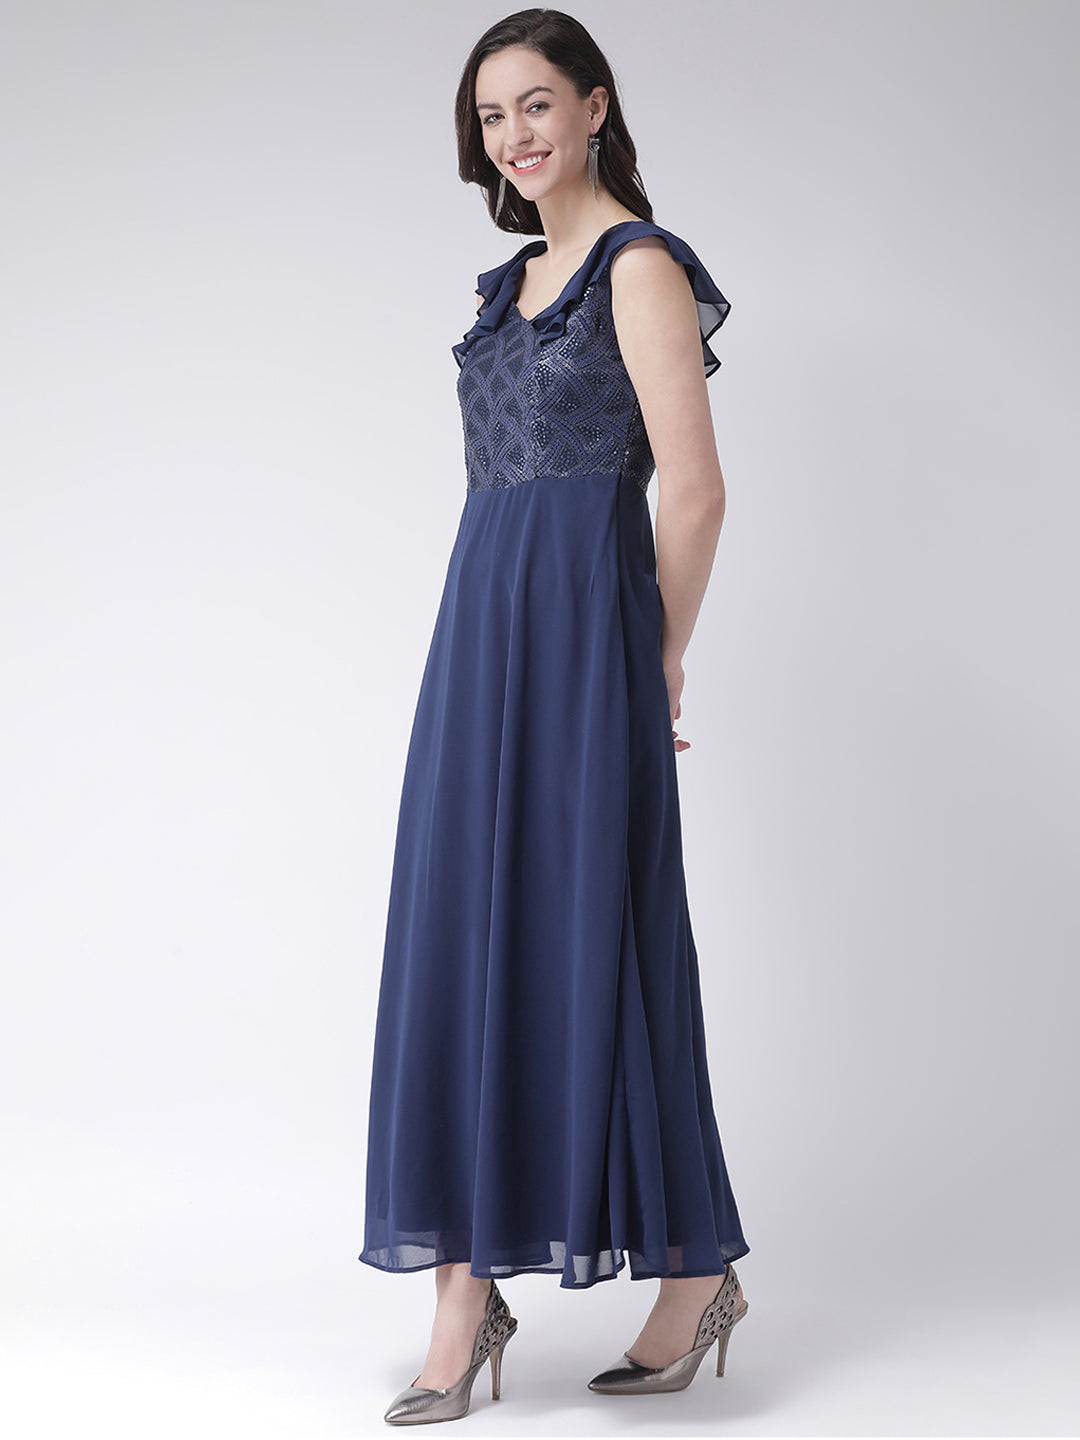 Blue Navy Sleeveless Maxi Dress With Ruffles